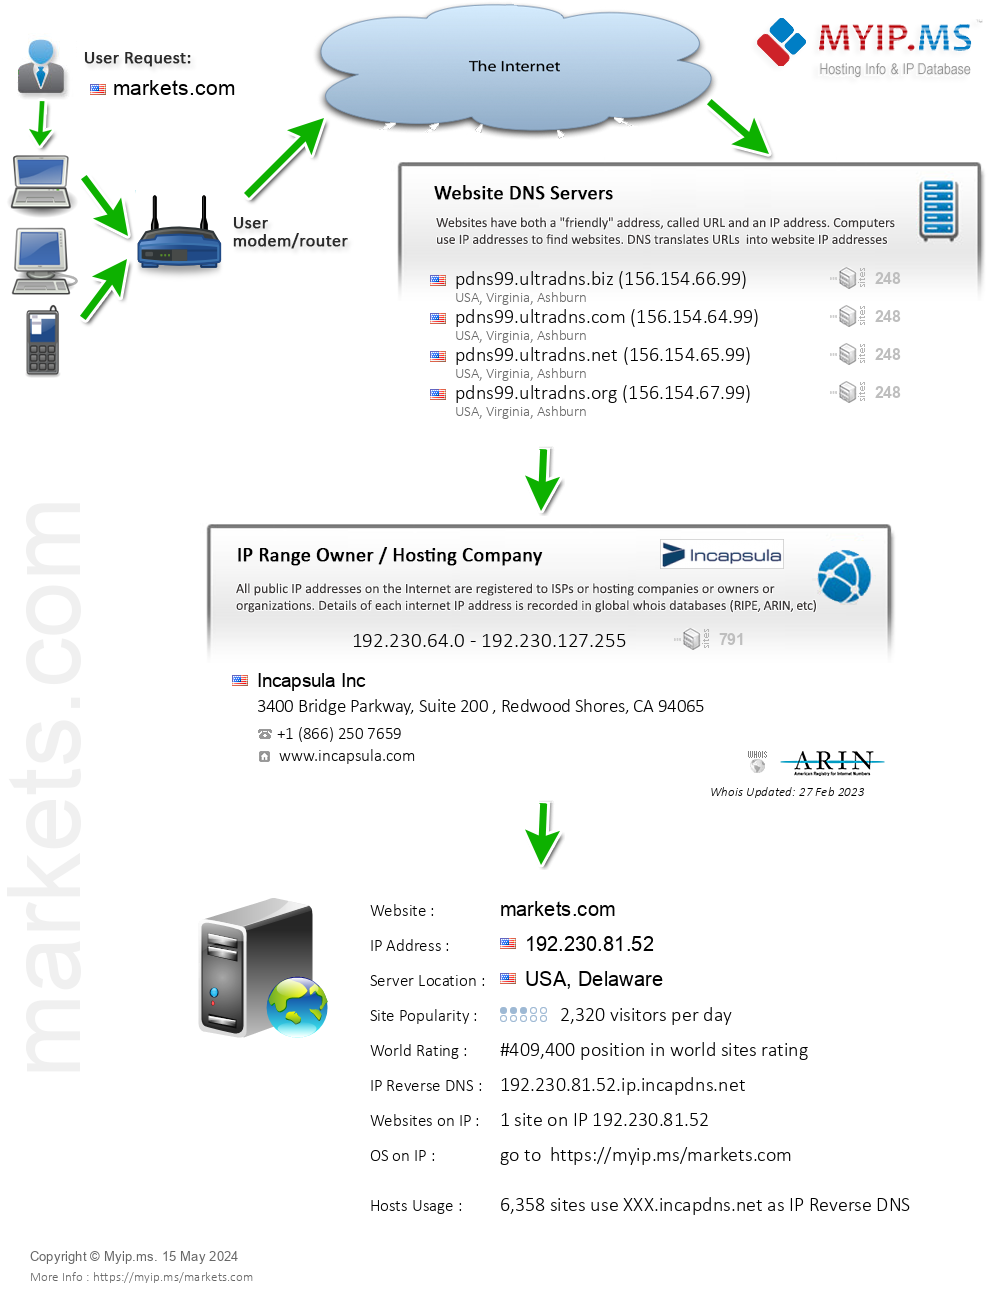 Markets.com - Website Hosting Visual IP Diagram